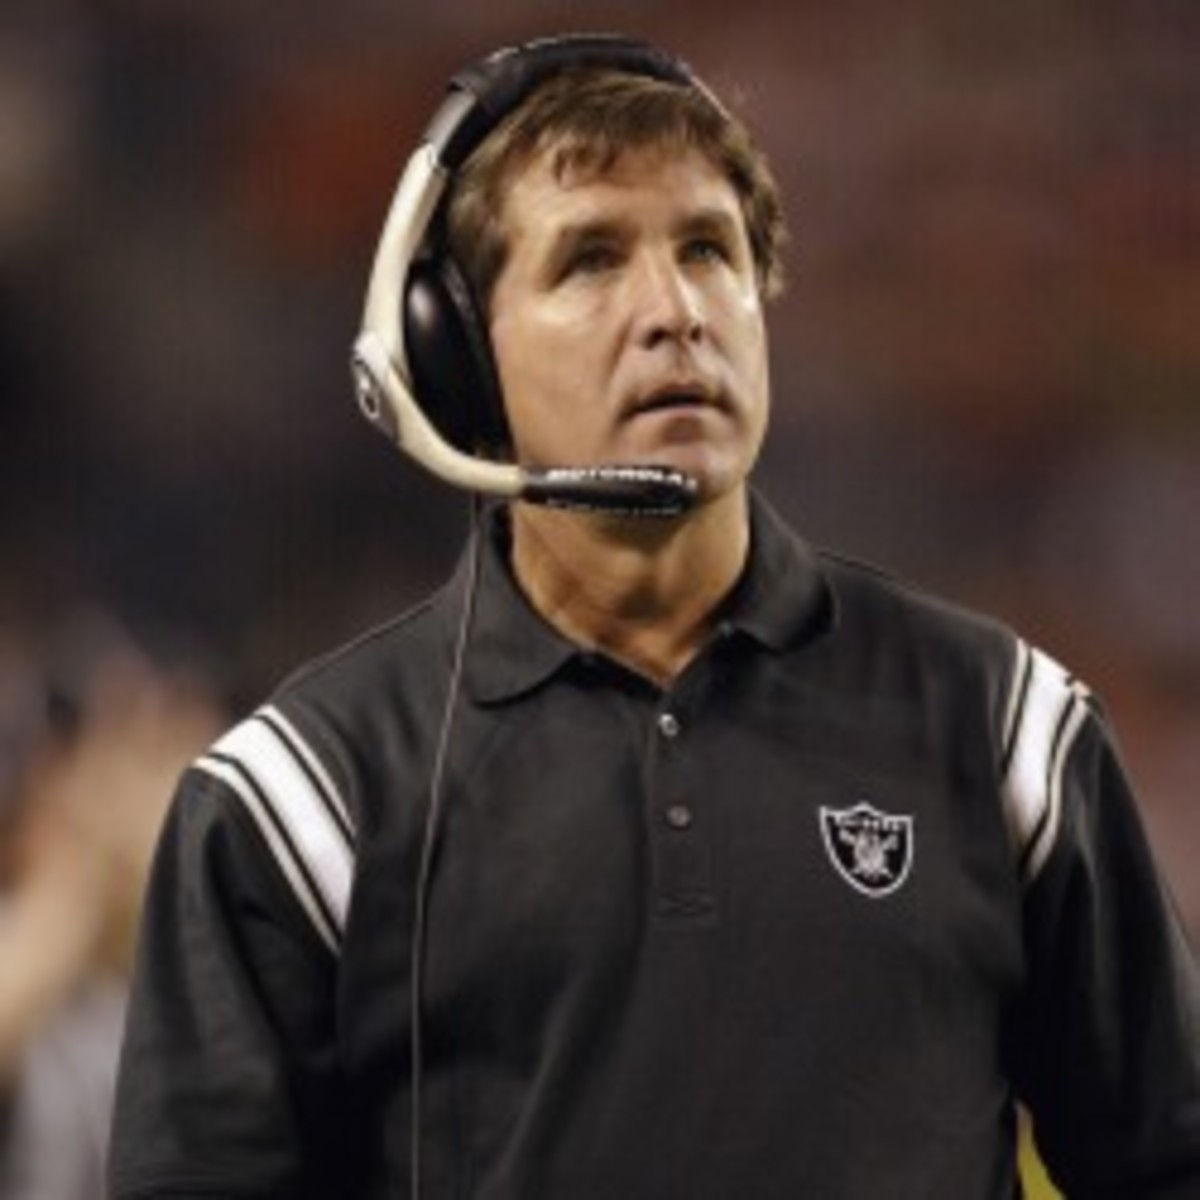 Former Raiders coach Bill Callahan said he did not sabotage a Super Bowl loss. (Brian Bahr/Getty Images)